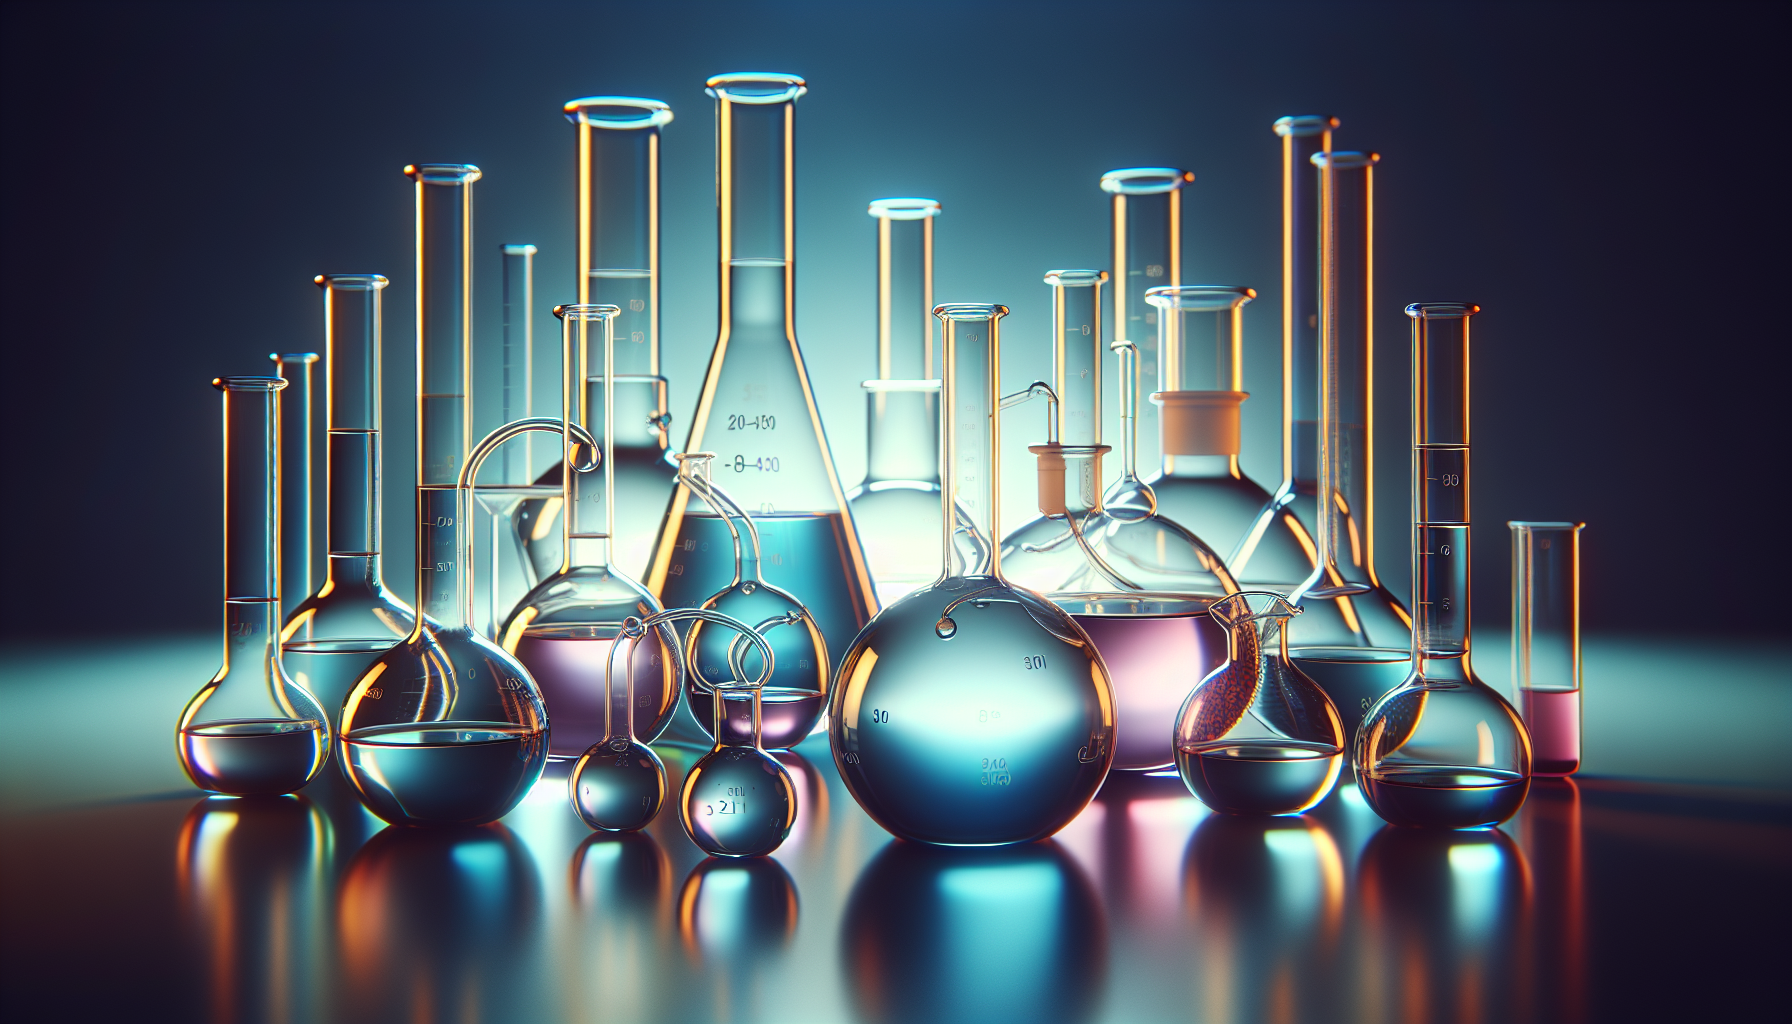 Specialized chemistry glassware types